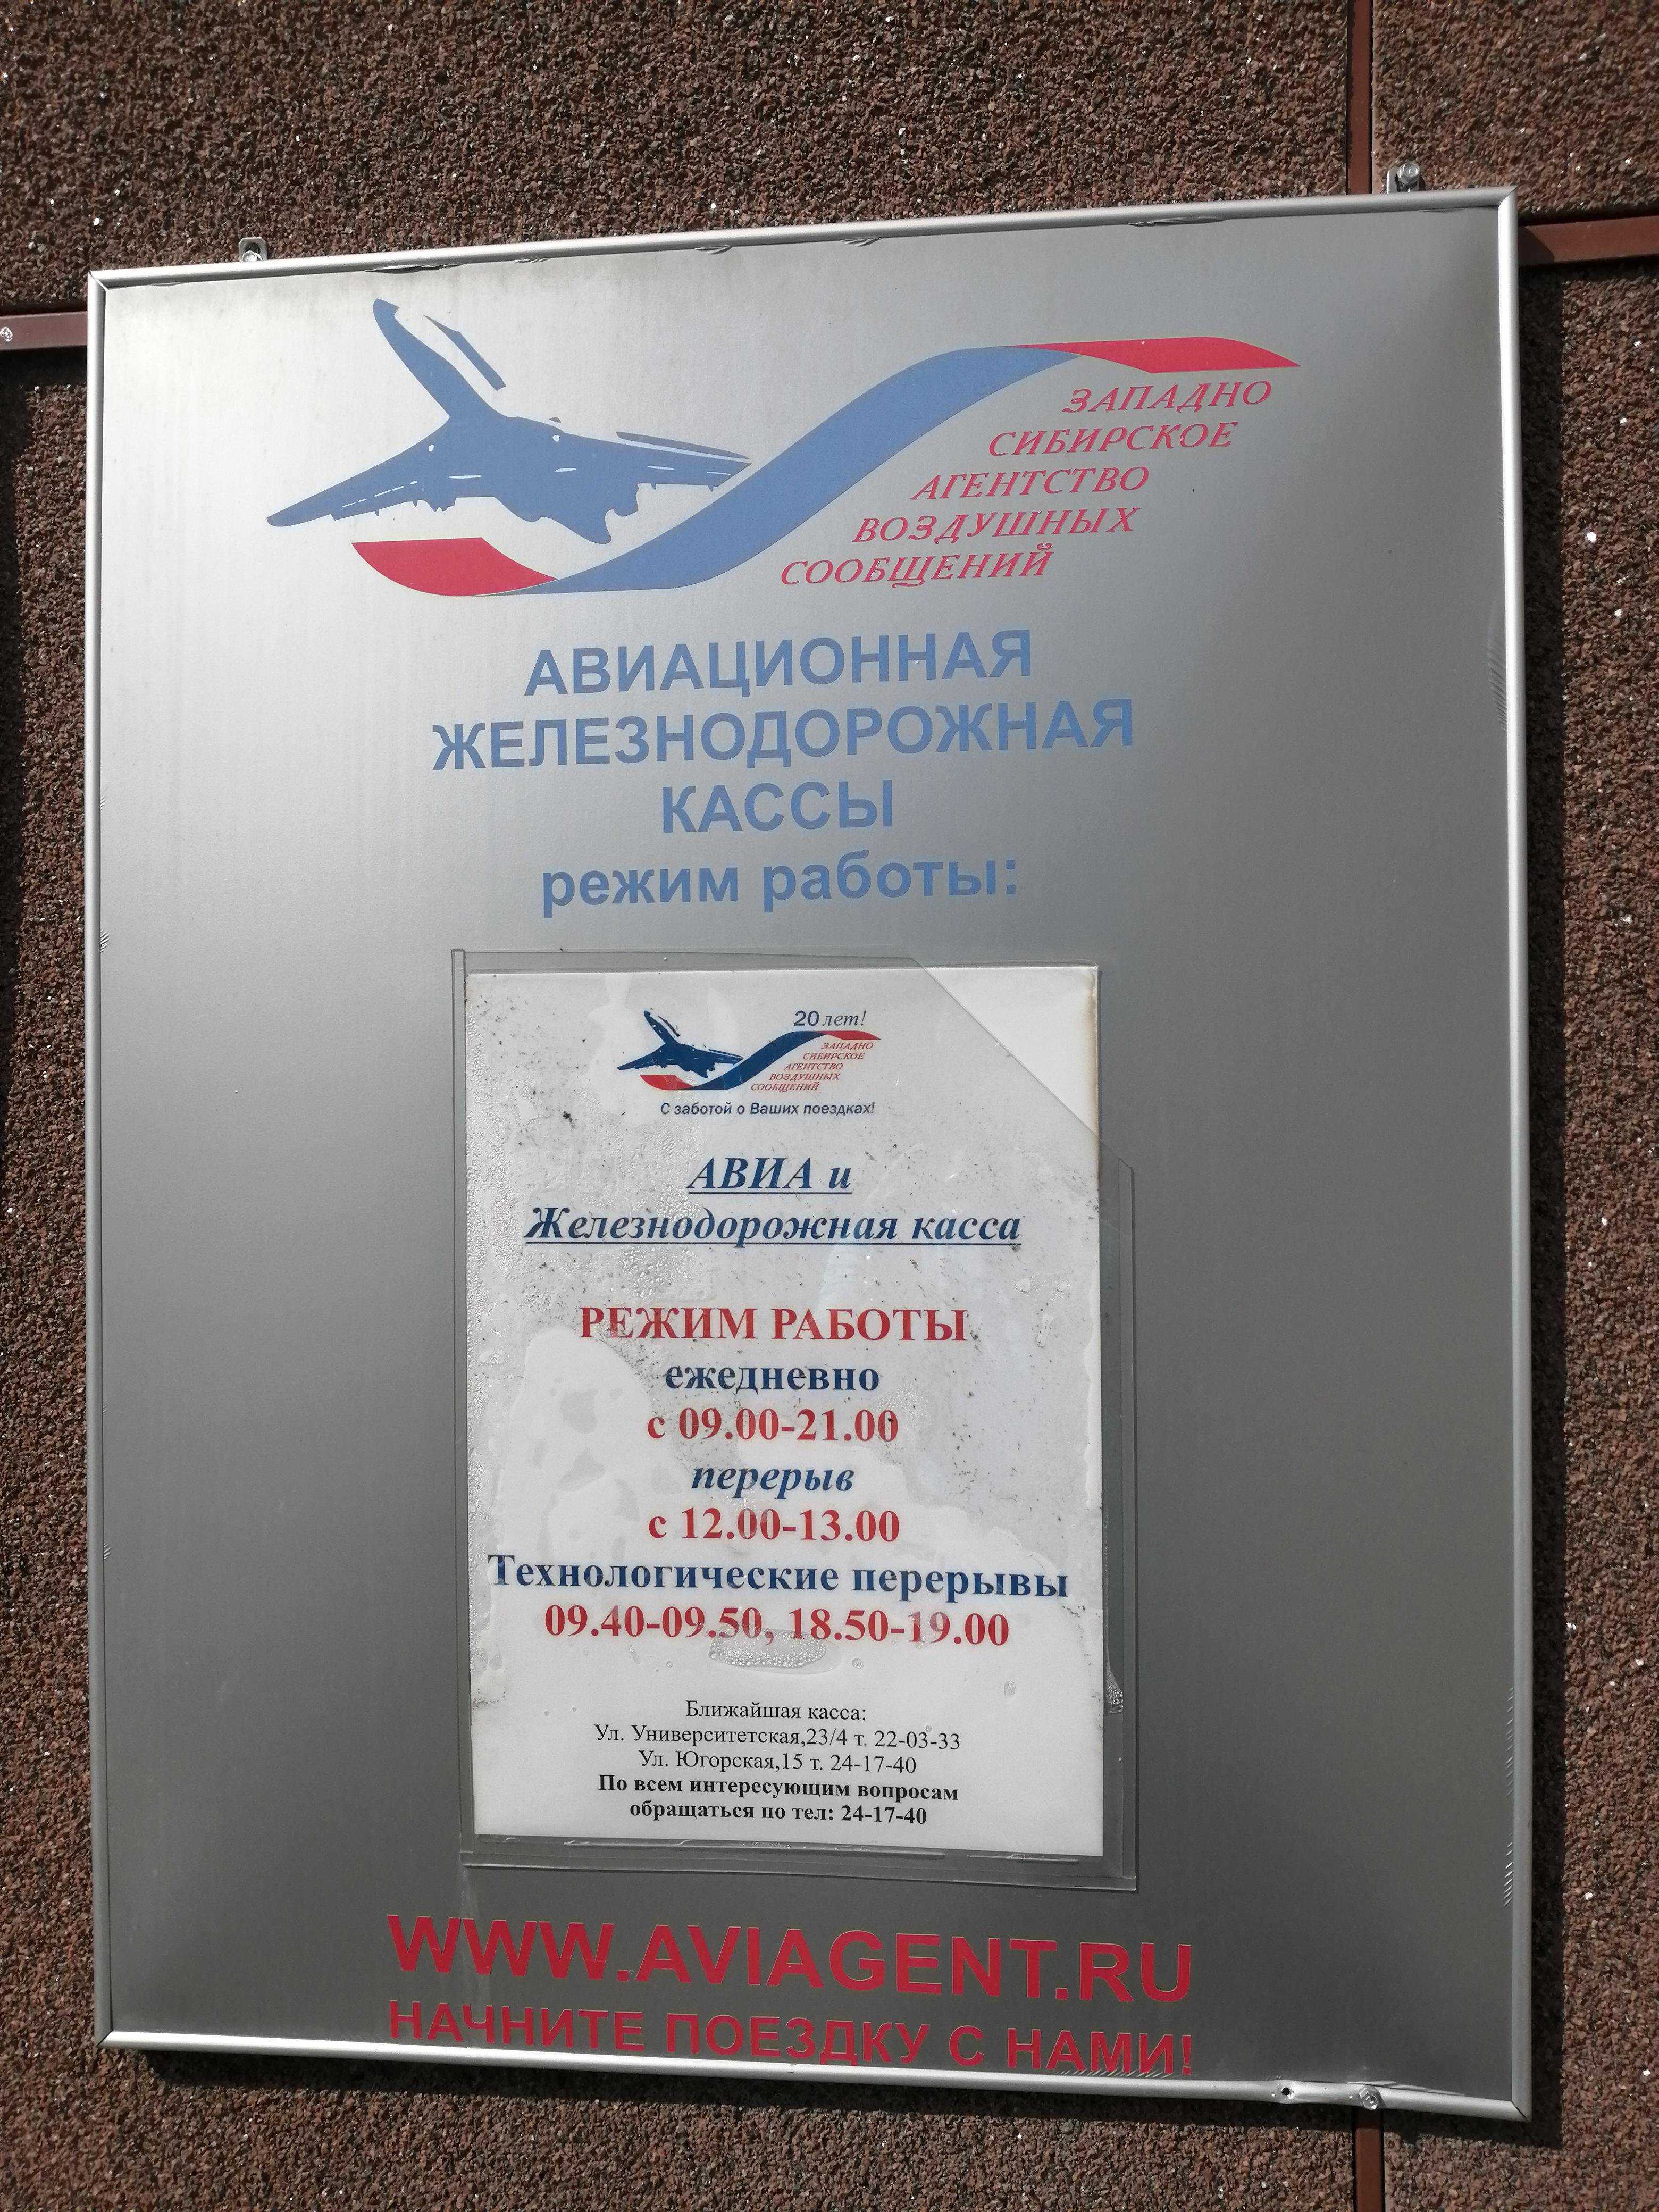 Западно-Сибирское агентство воздушных сообщений фото 1